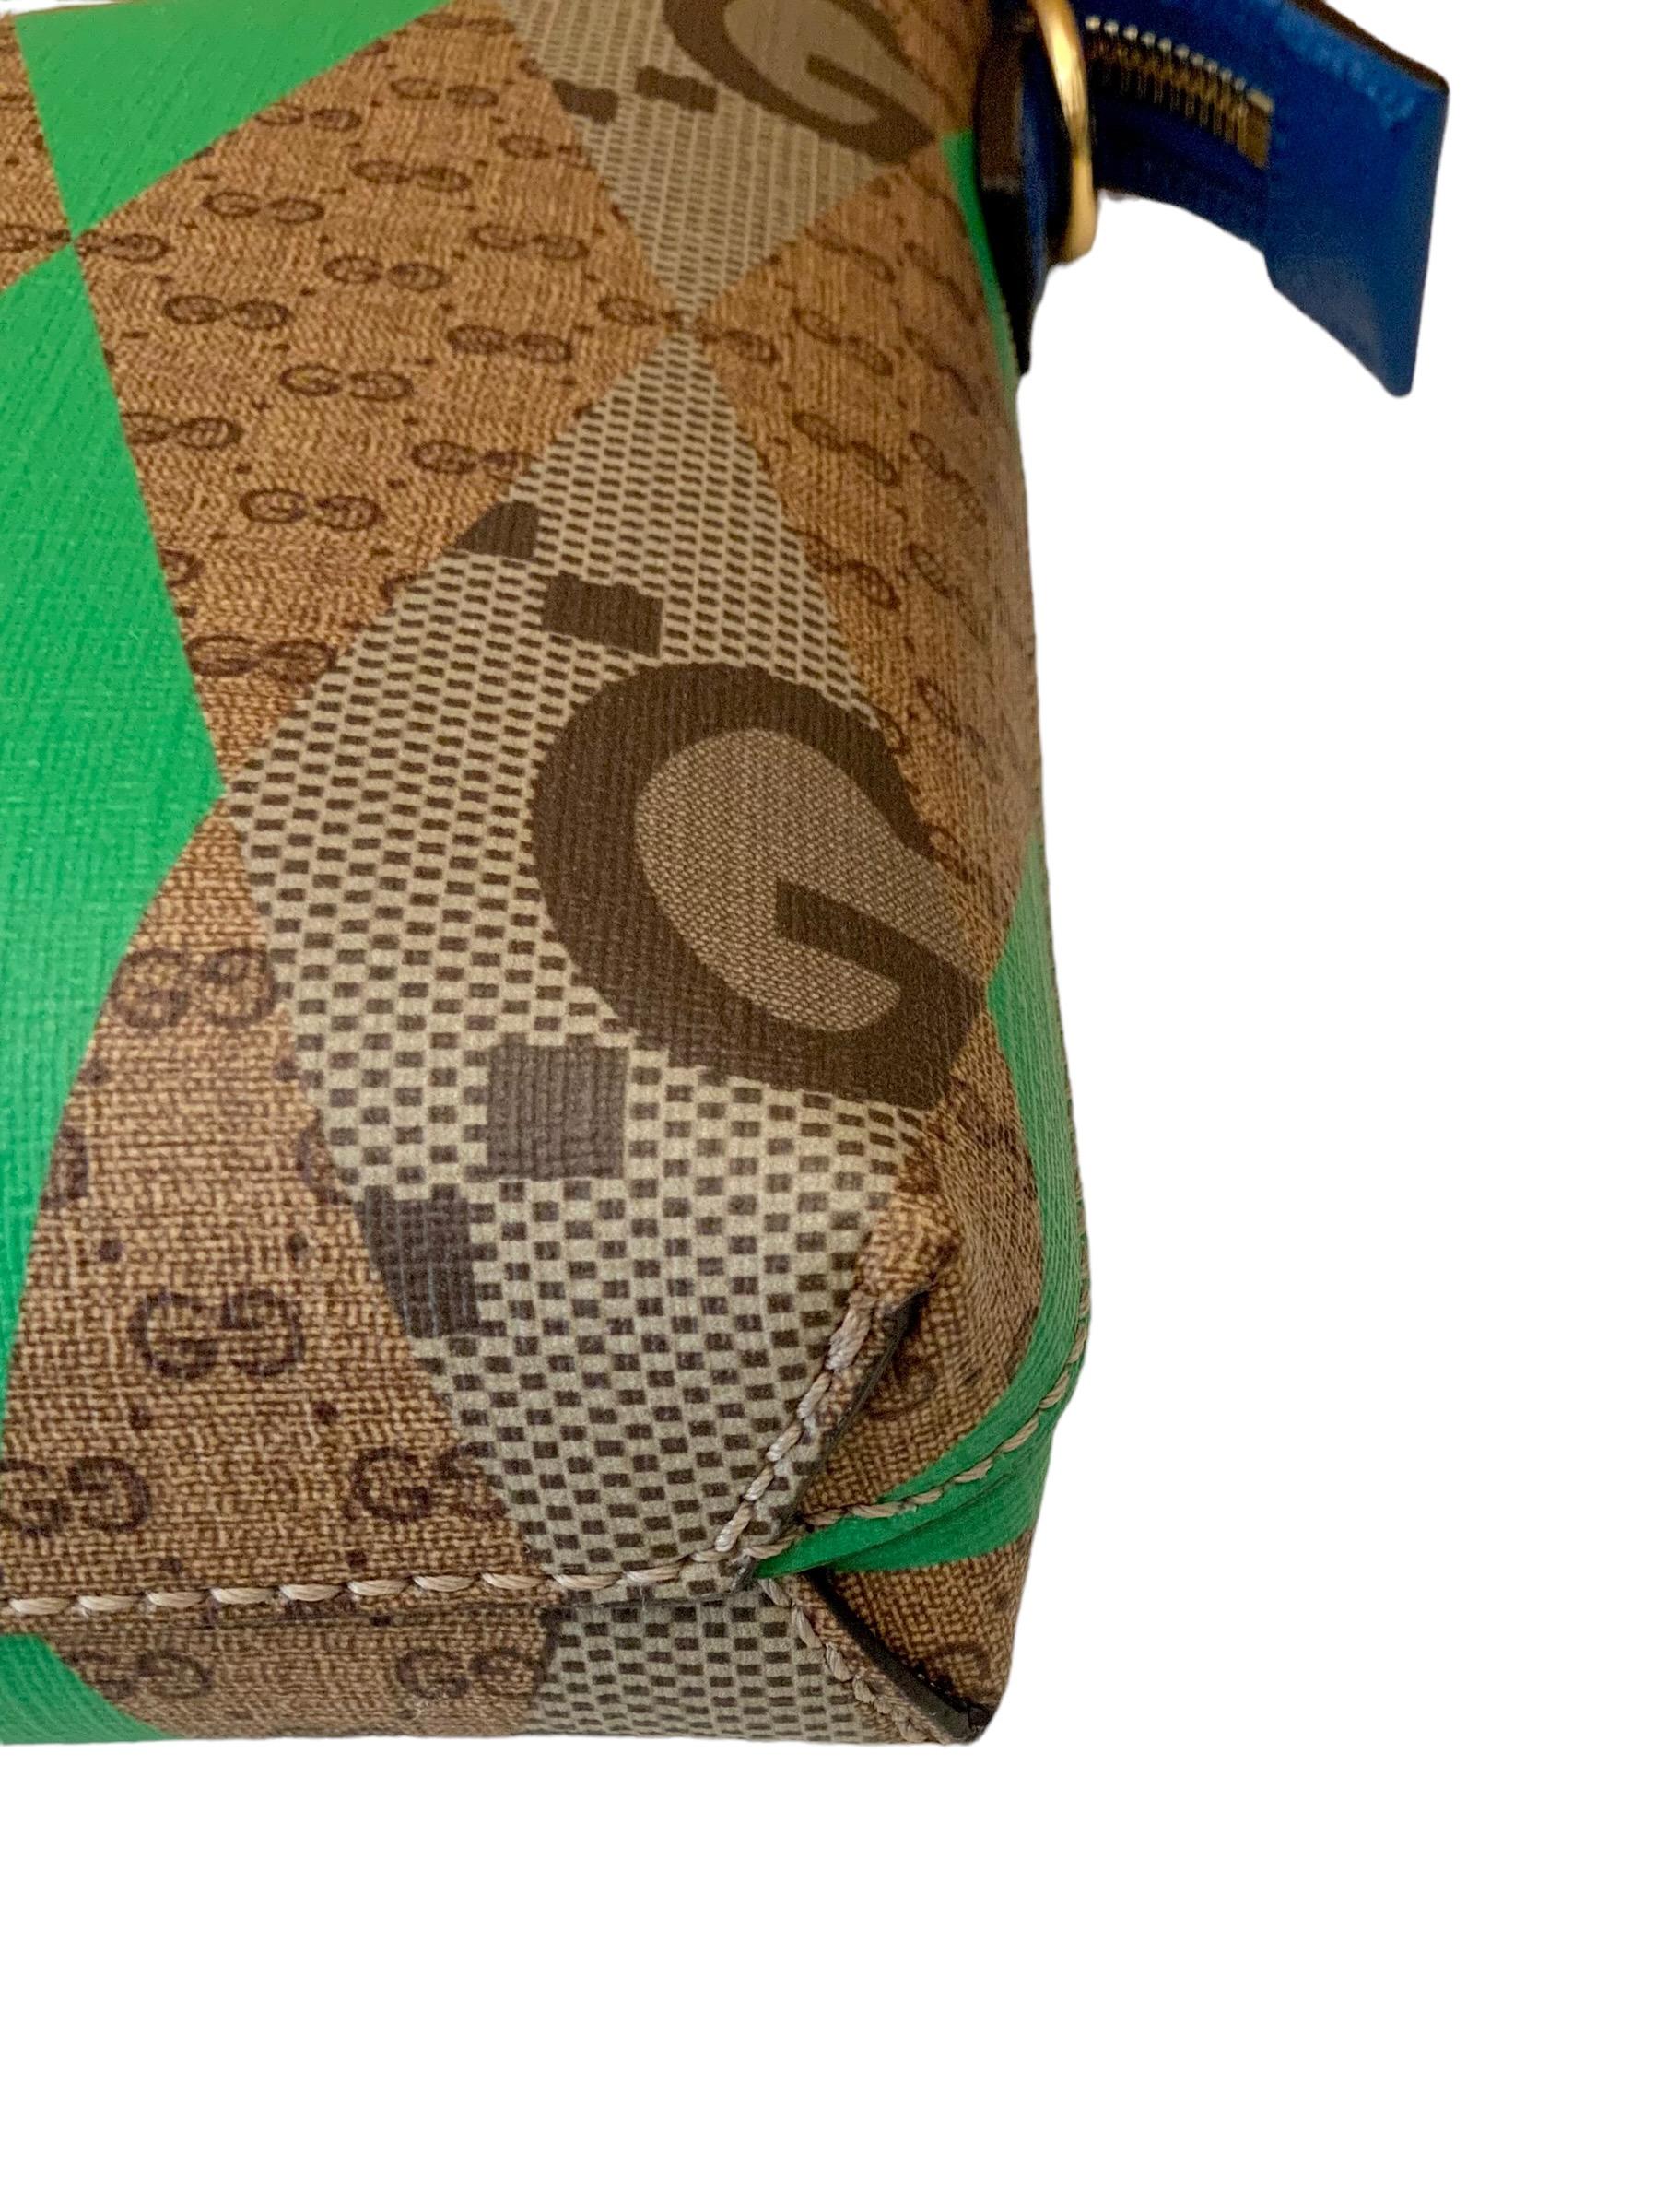 Sac messager Gucci GG imprimé losange de taille moyenne 6